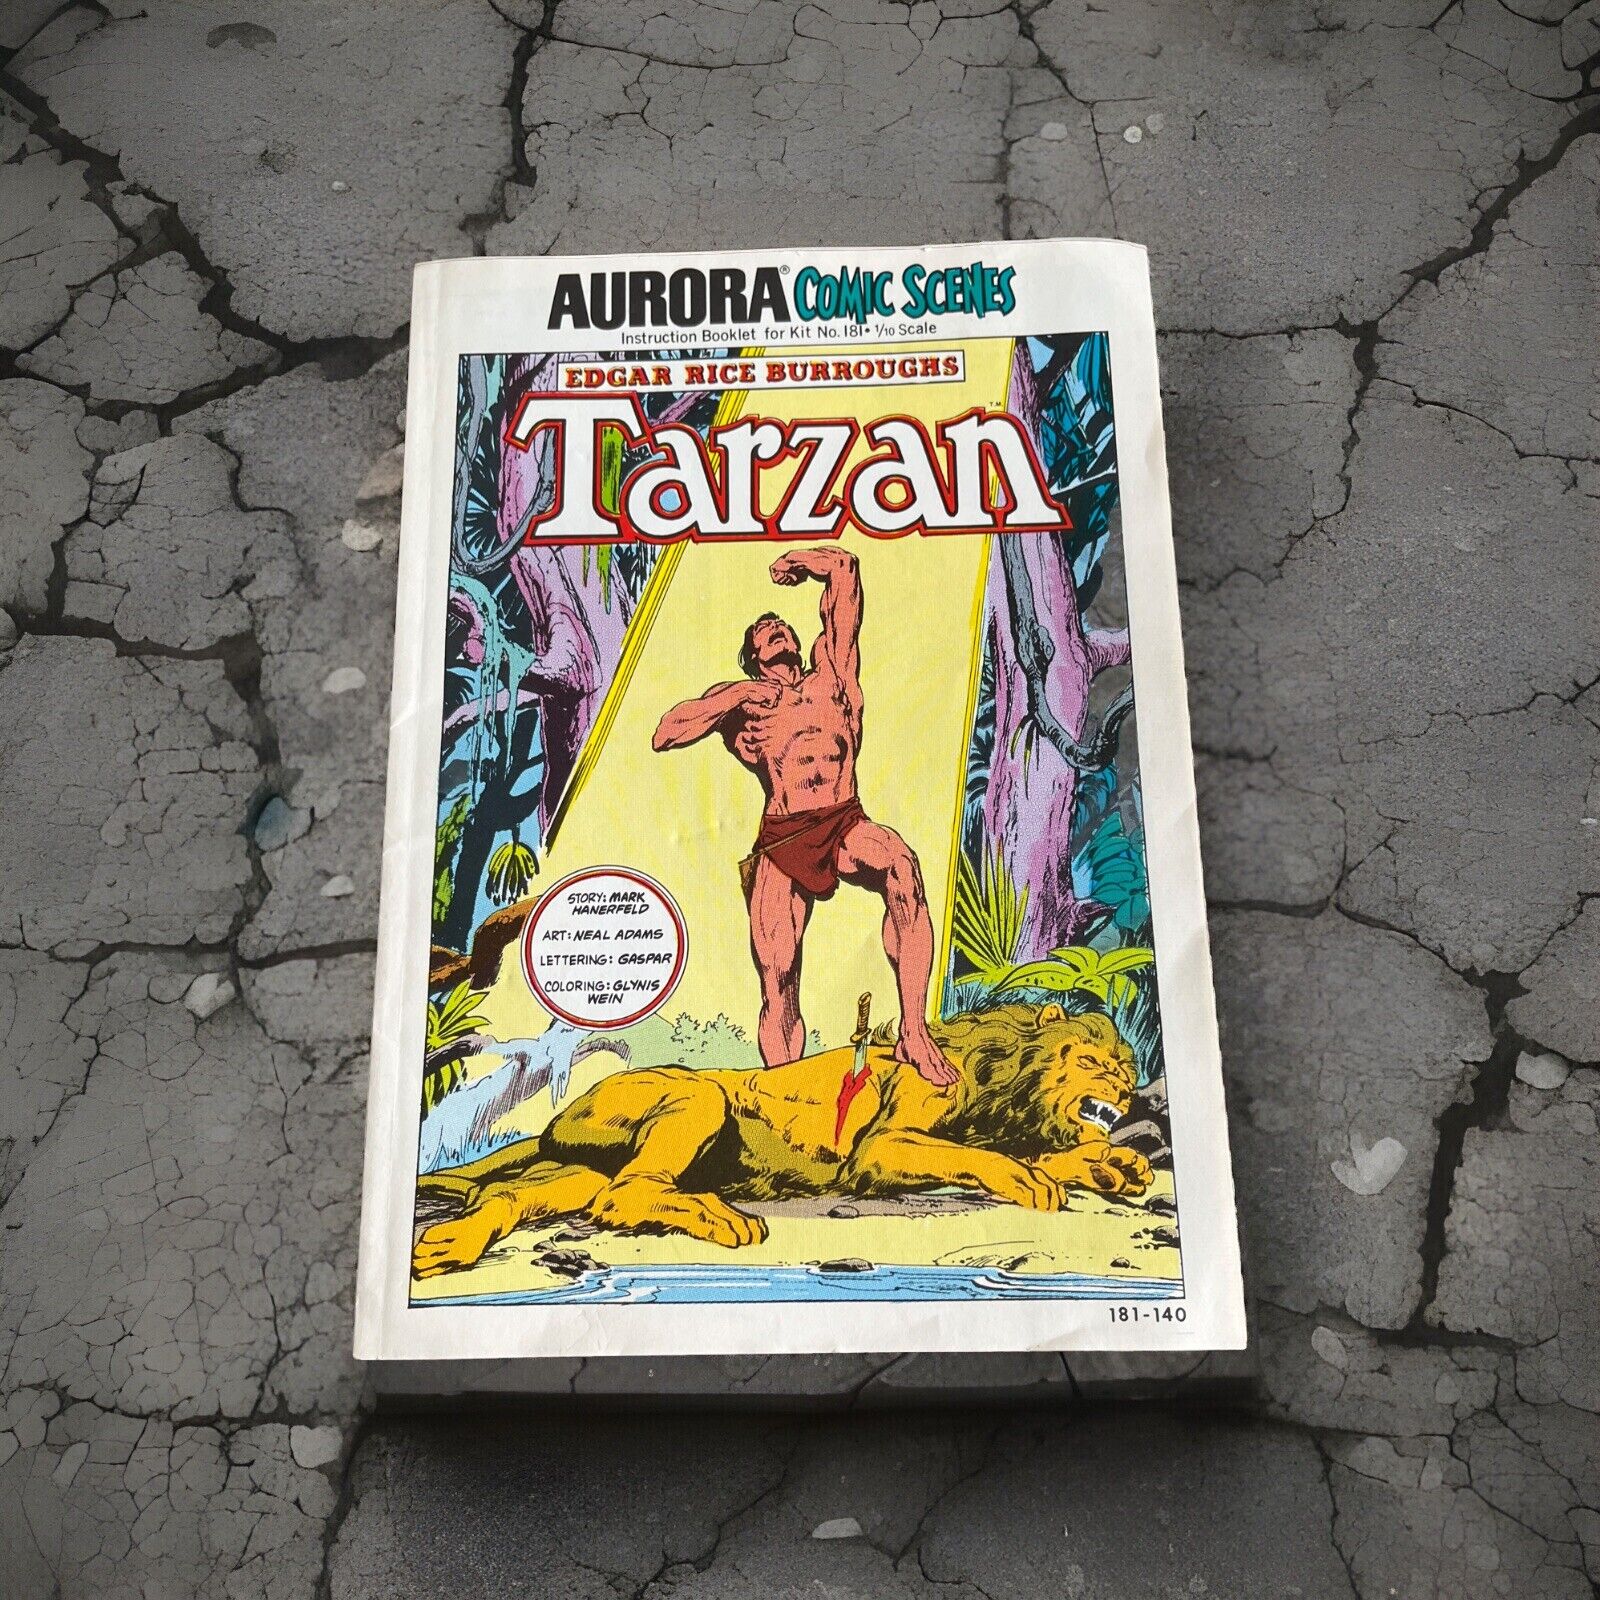 Vintage Aurora Comic Scenes Tarzan #181-140 (1974) NO KIT